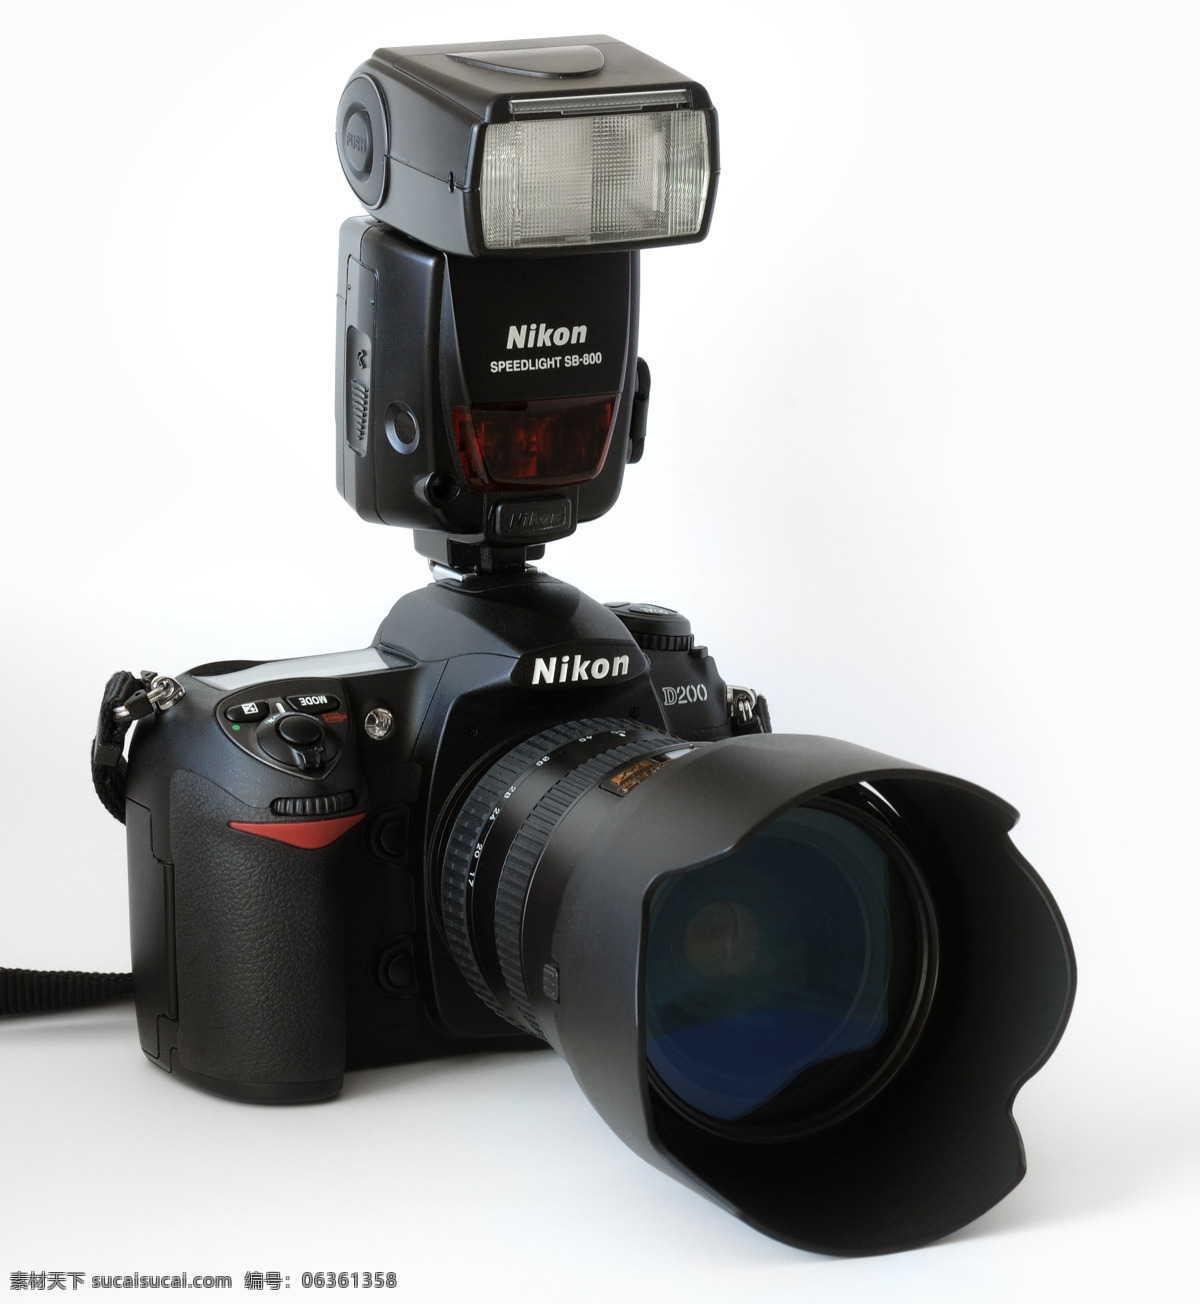 尼康 相机 科技产品 日本 现代科技 尼康相机 单反机 顶级品牌 psd源文件